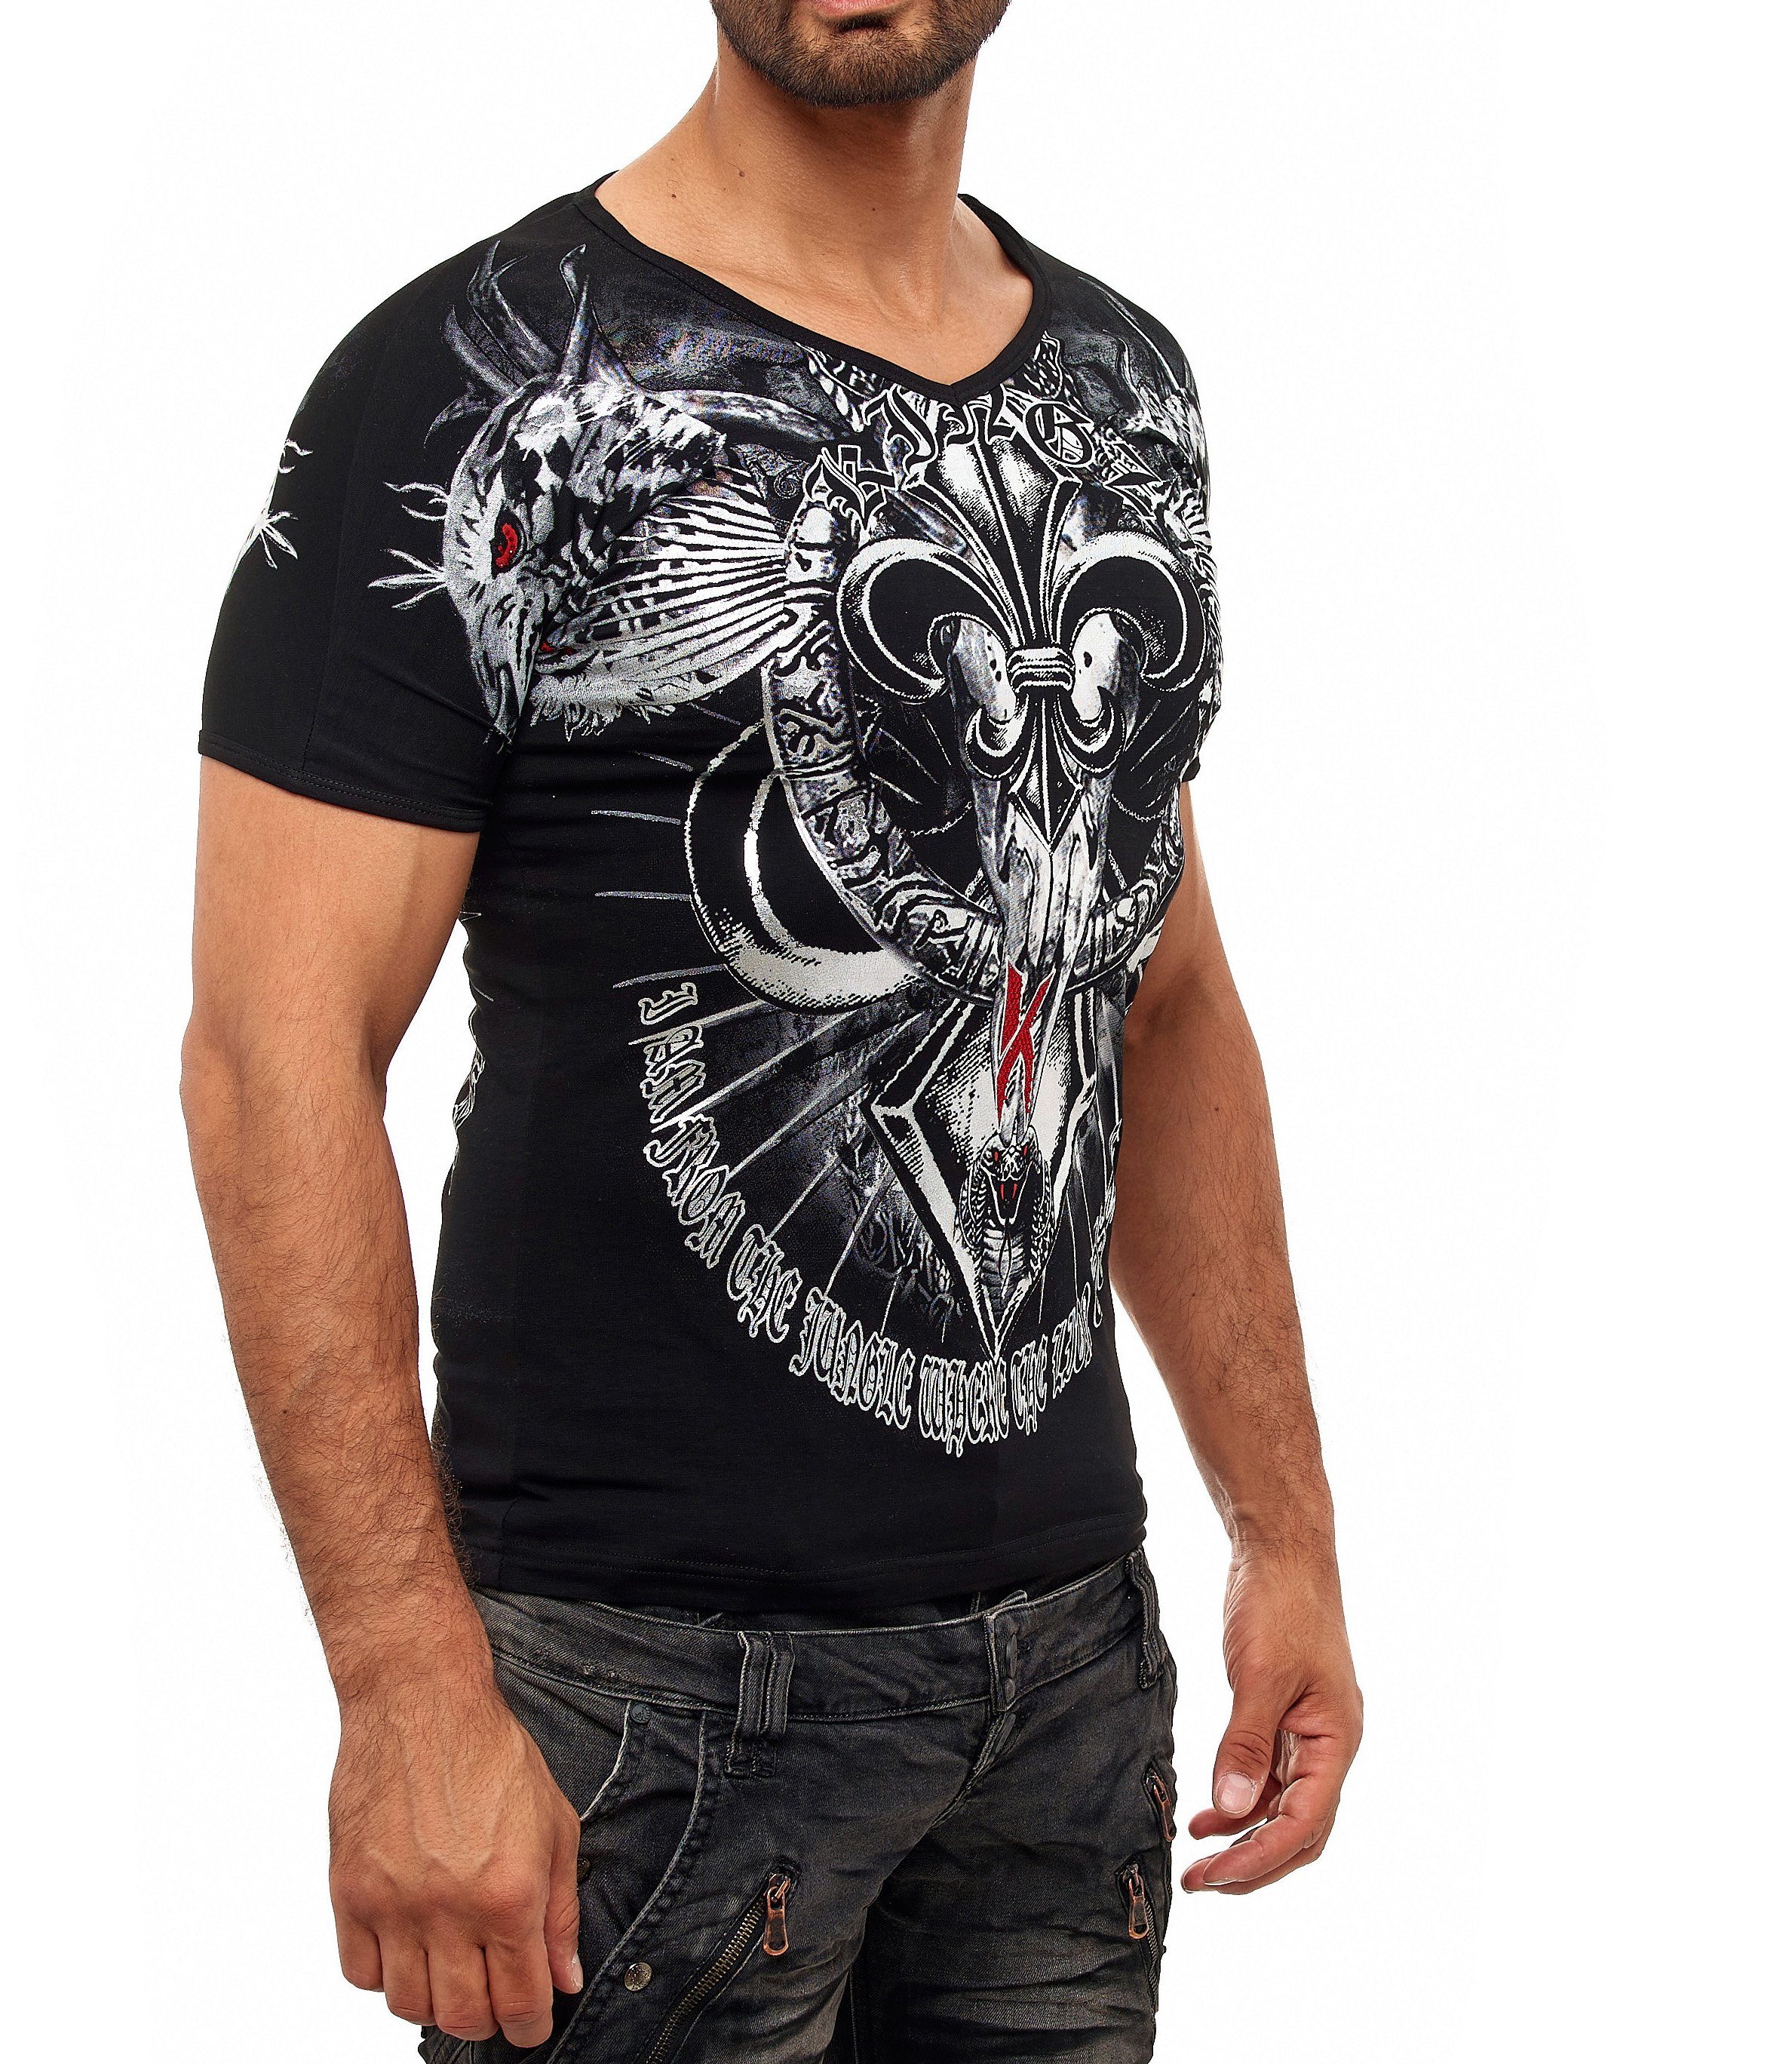 Cobra-Lilien-Print KINGZ mit ausgefallenem schwarz-silberfarben T-Shirt